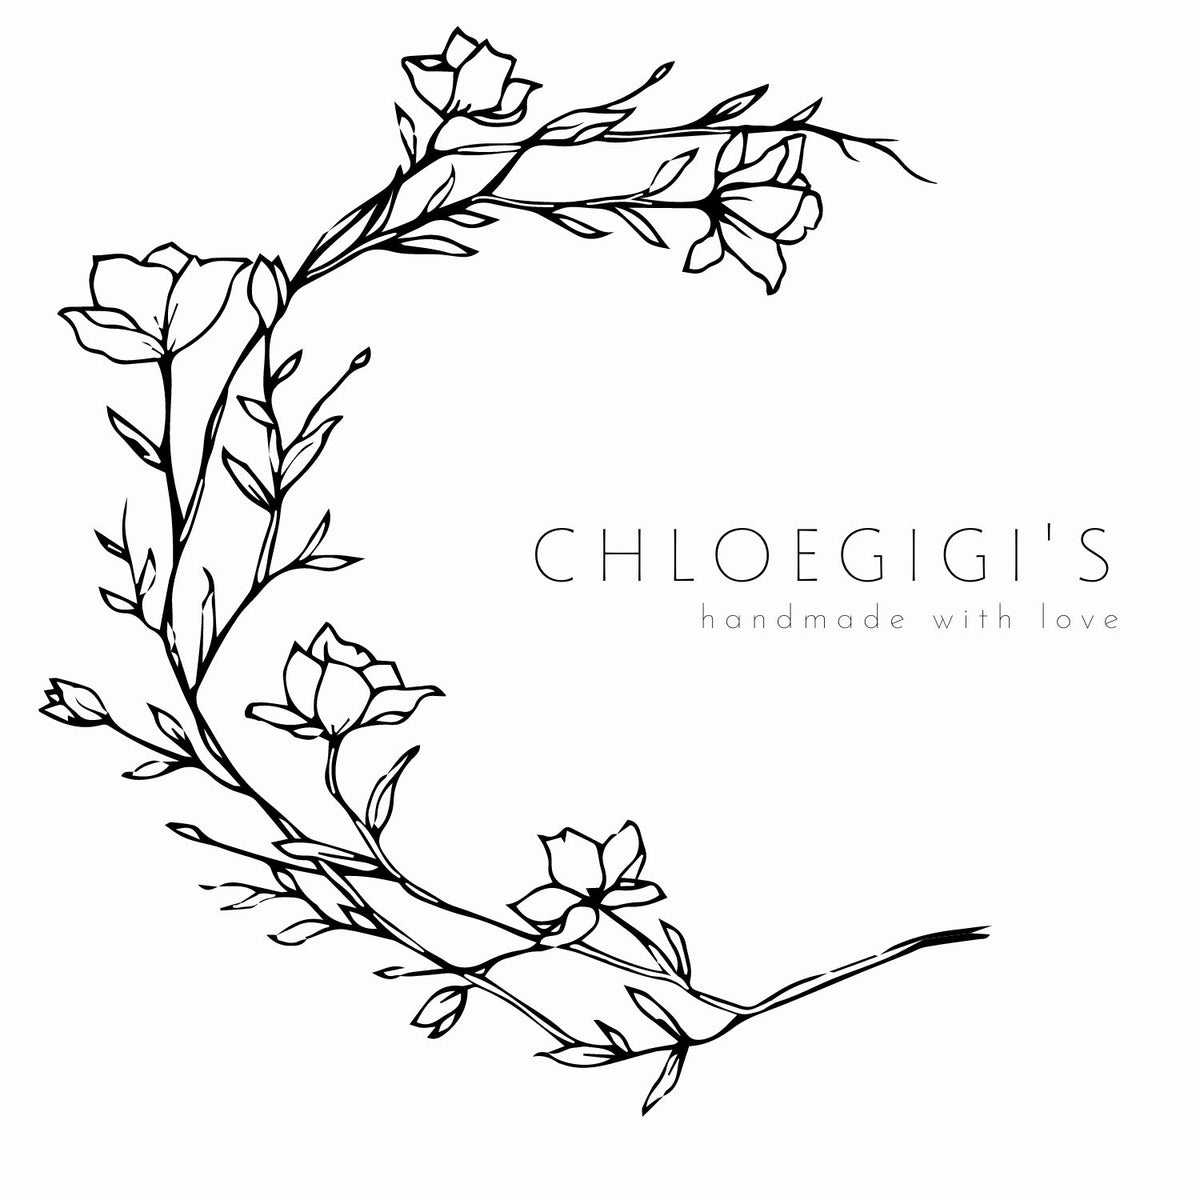 chloegigis.com